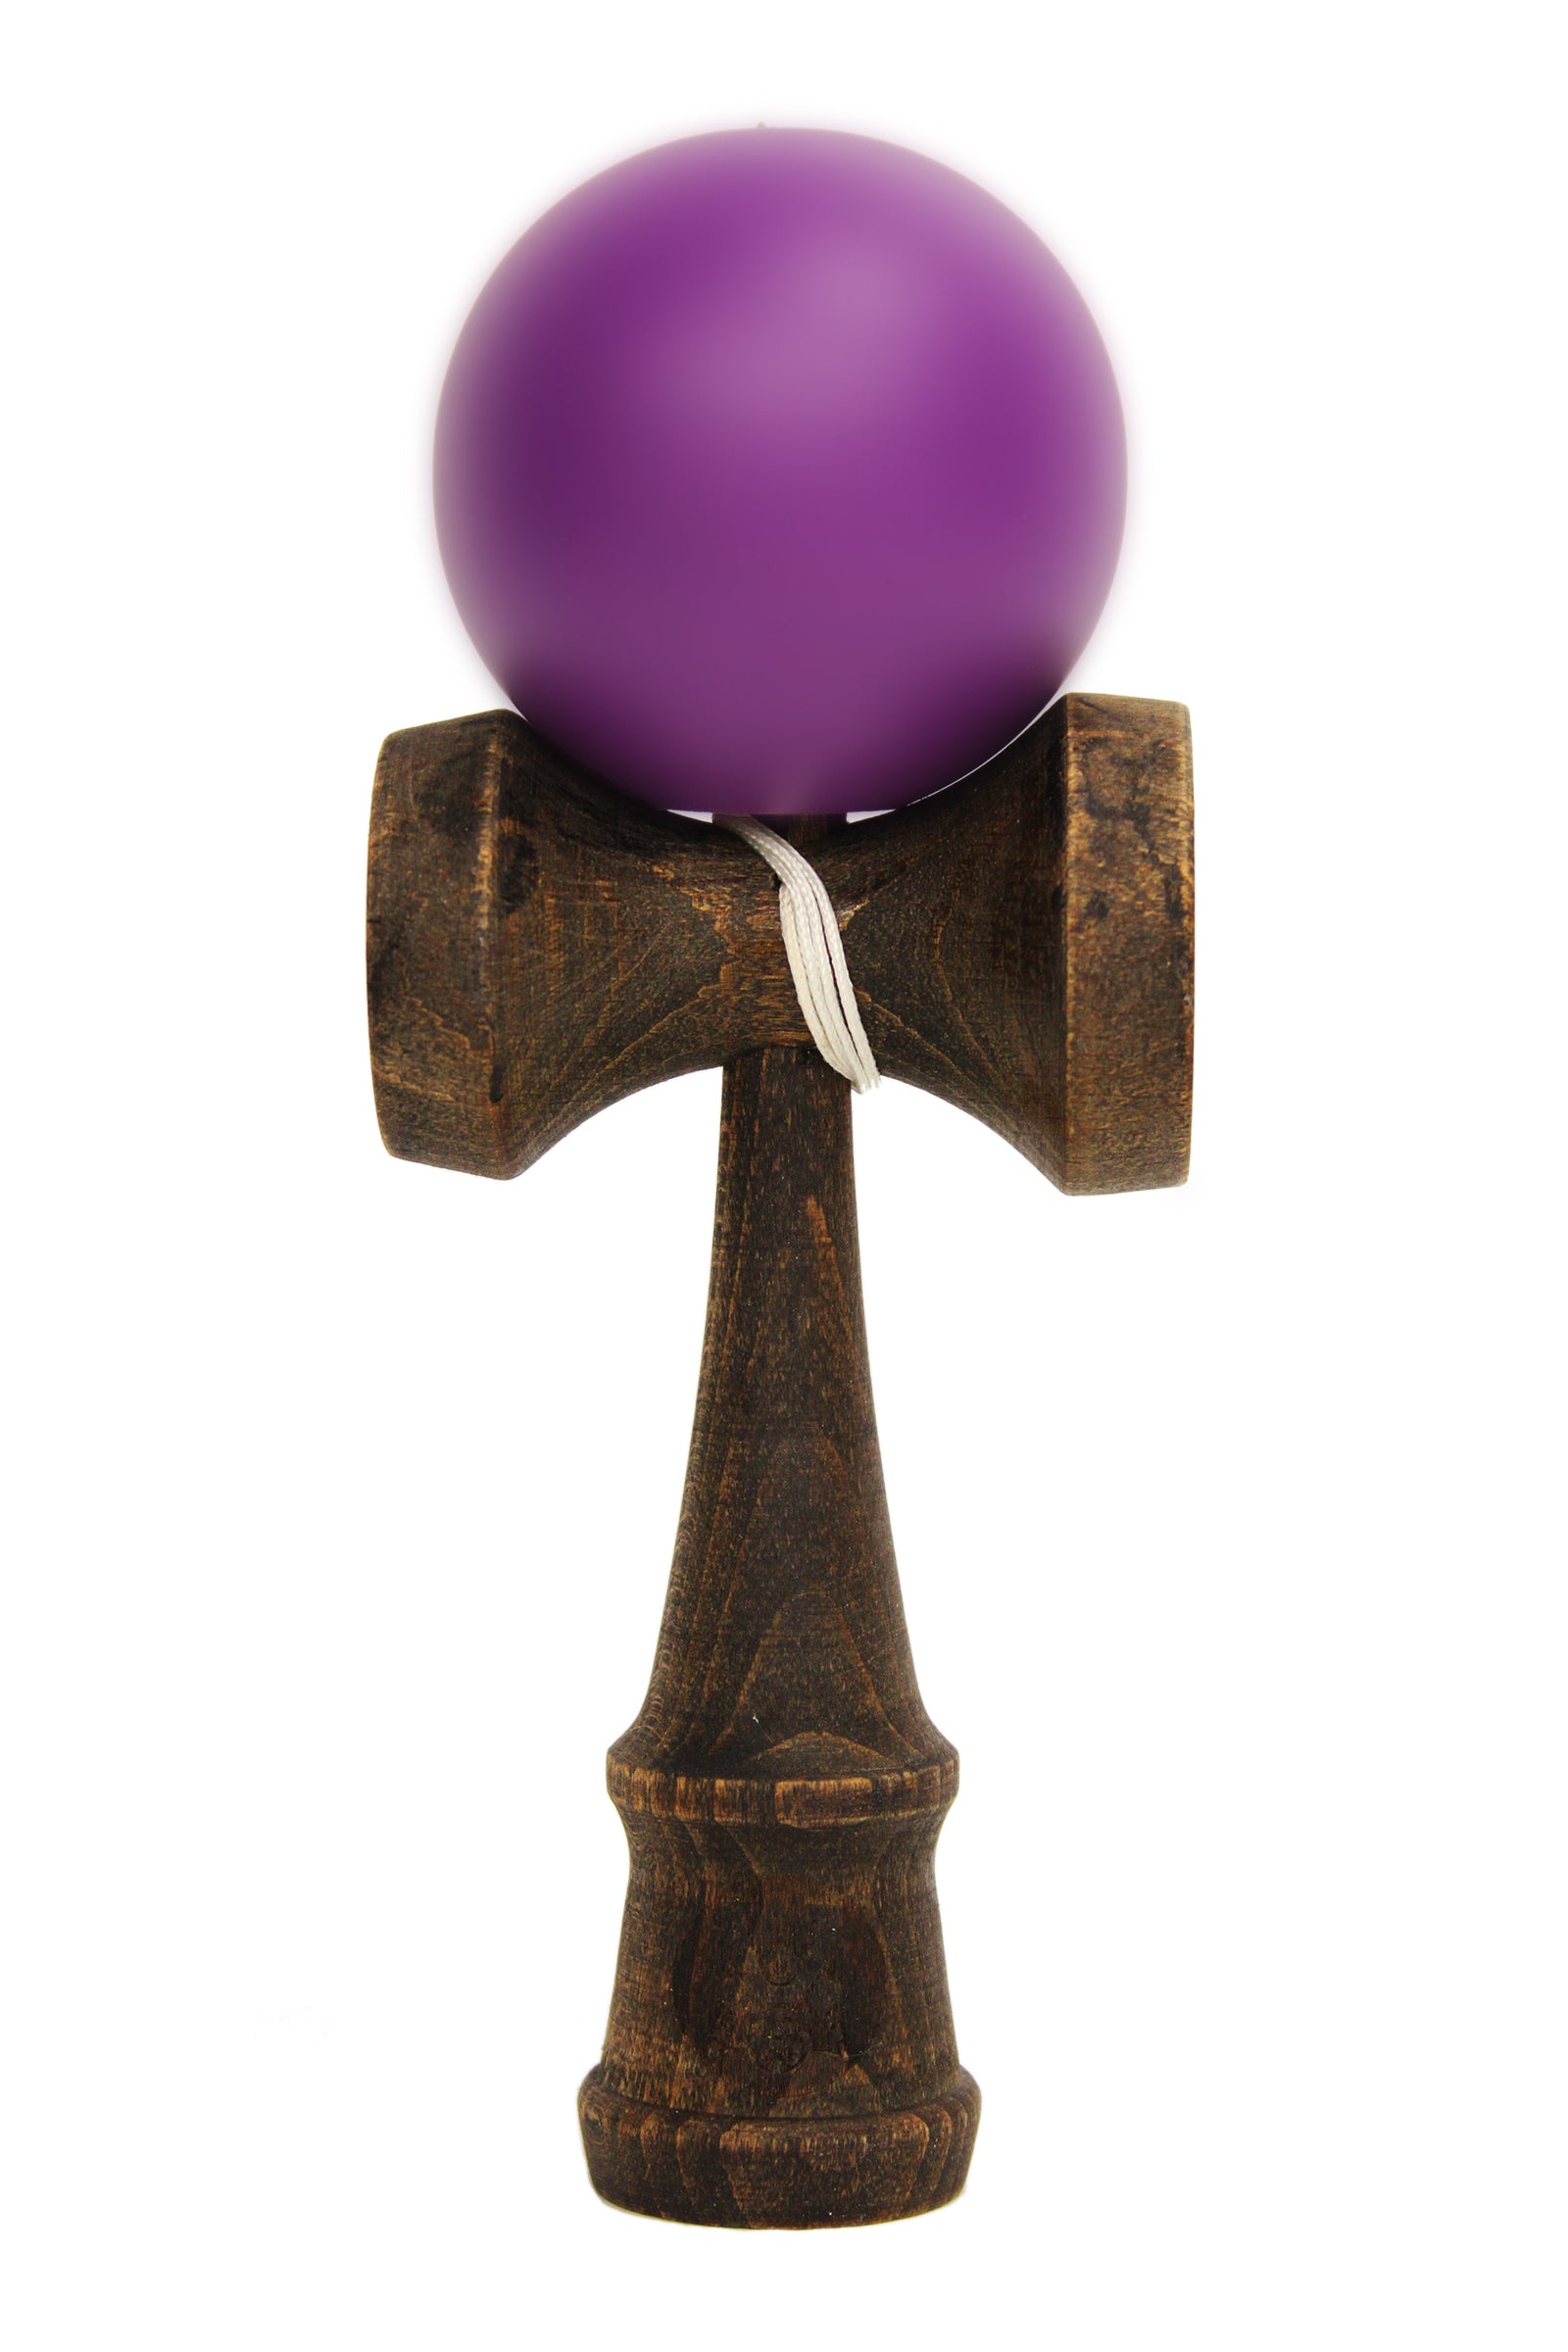 A dark finished Bushido Kendama with matte PurpleHeart purple ball